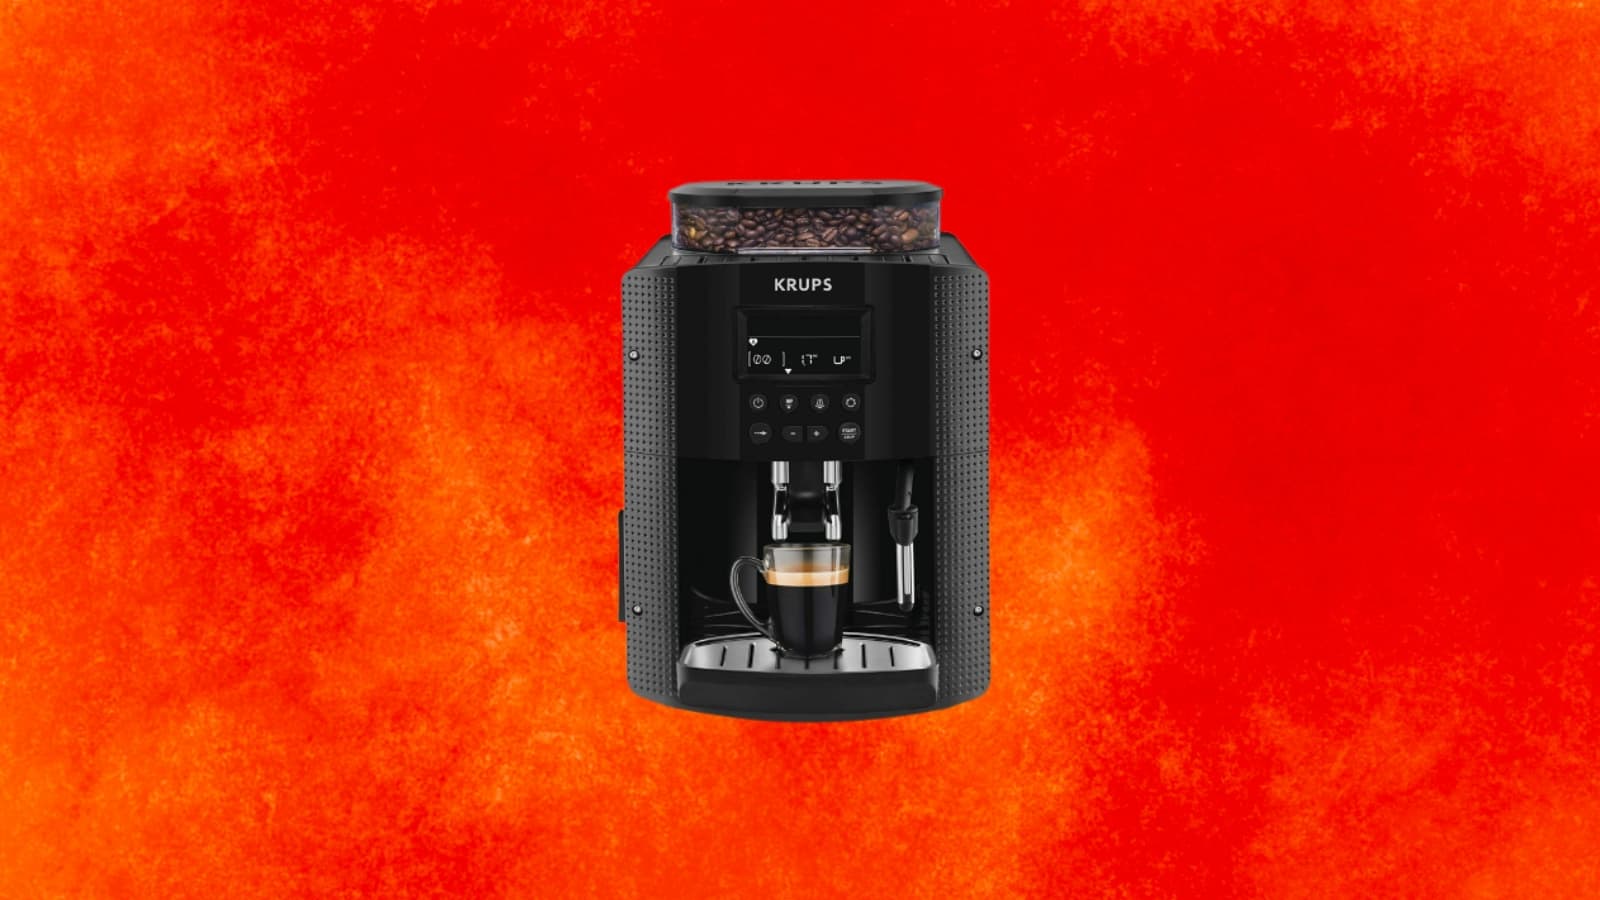 Machine à café : super prix sur la Krups, les soldes  n'y sont pas  pour rien